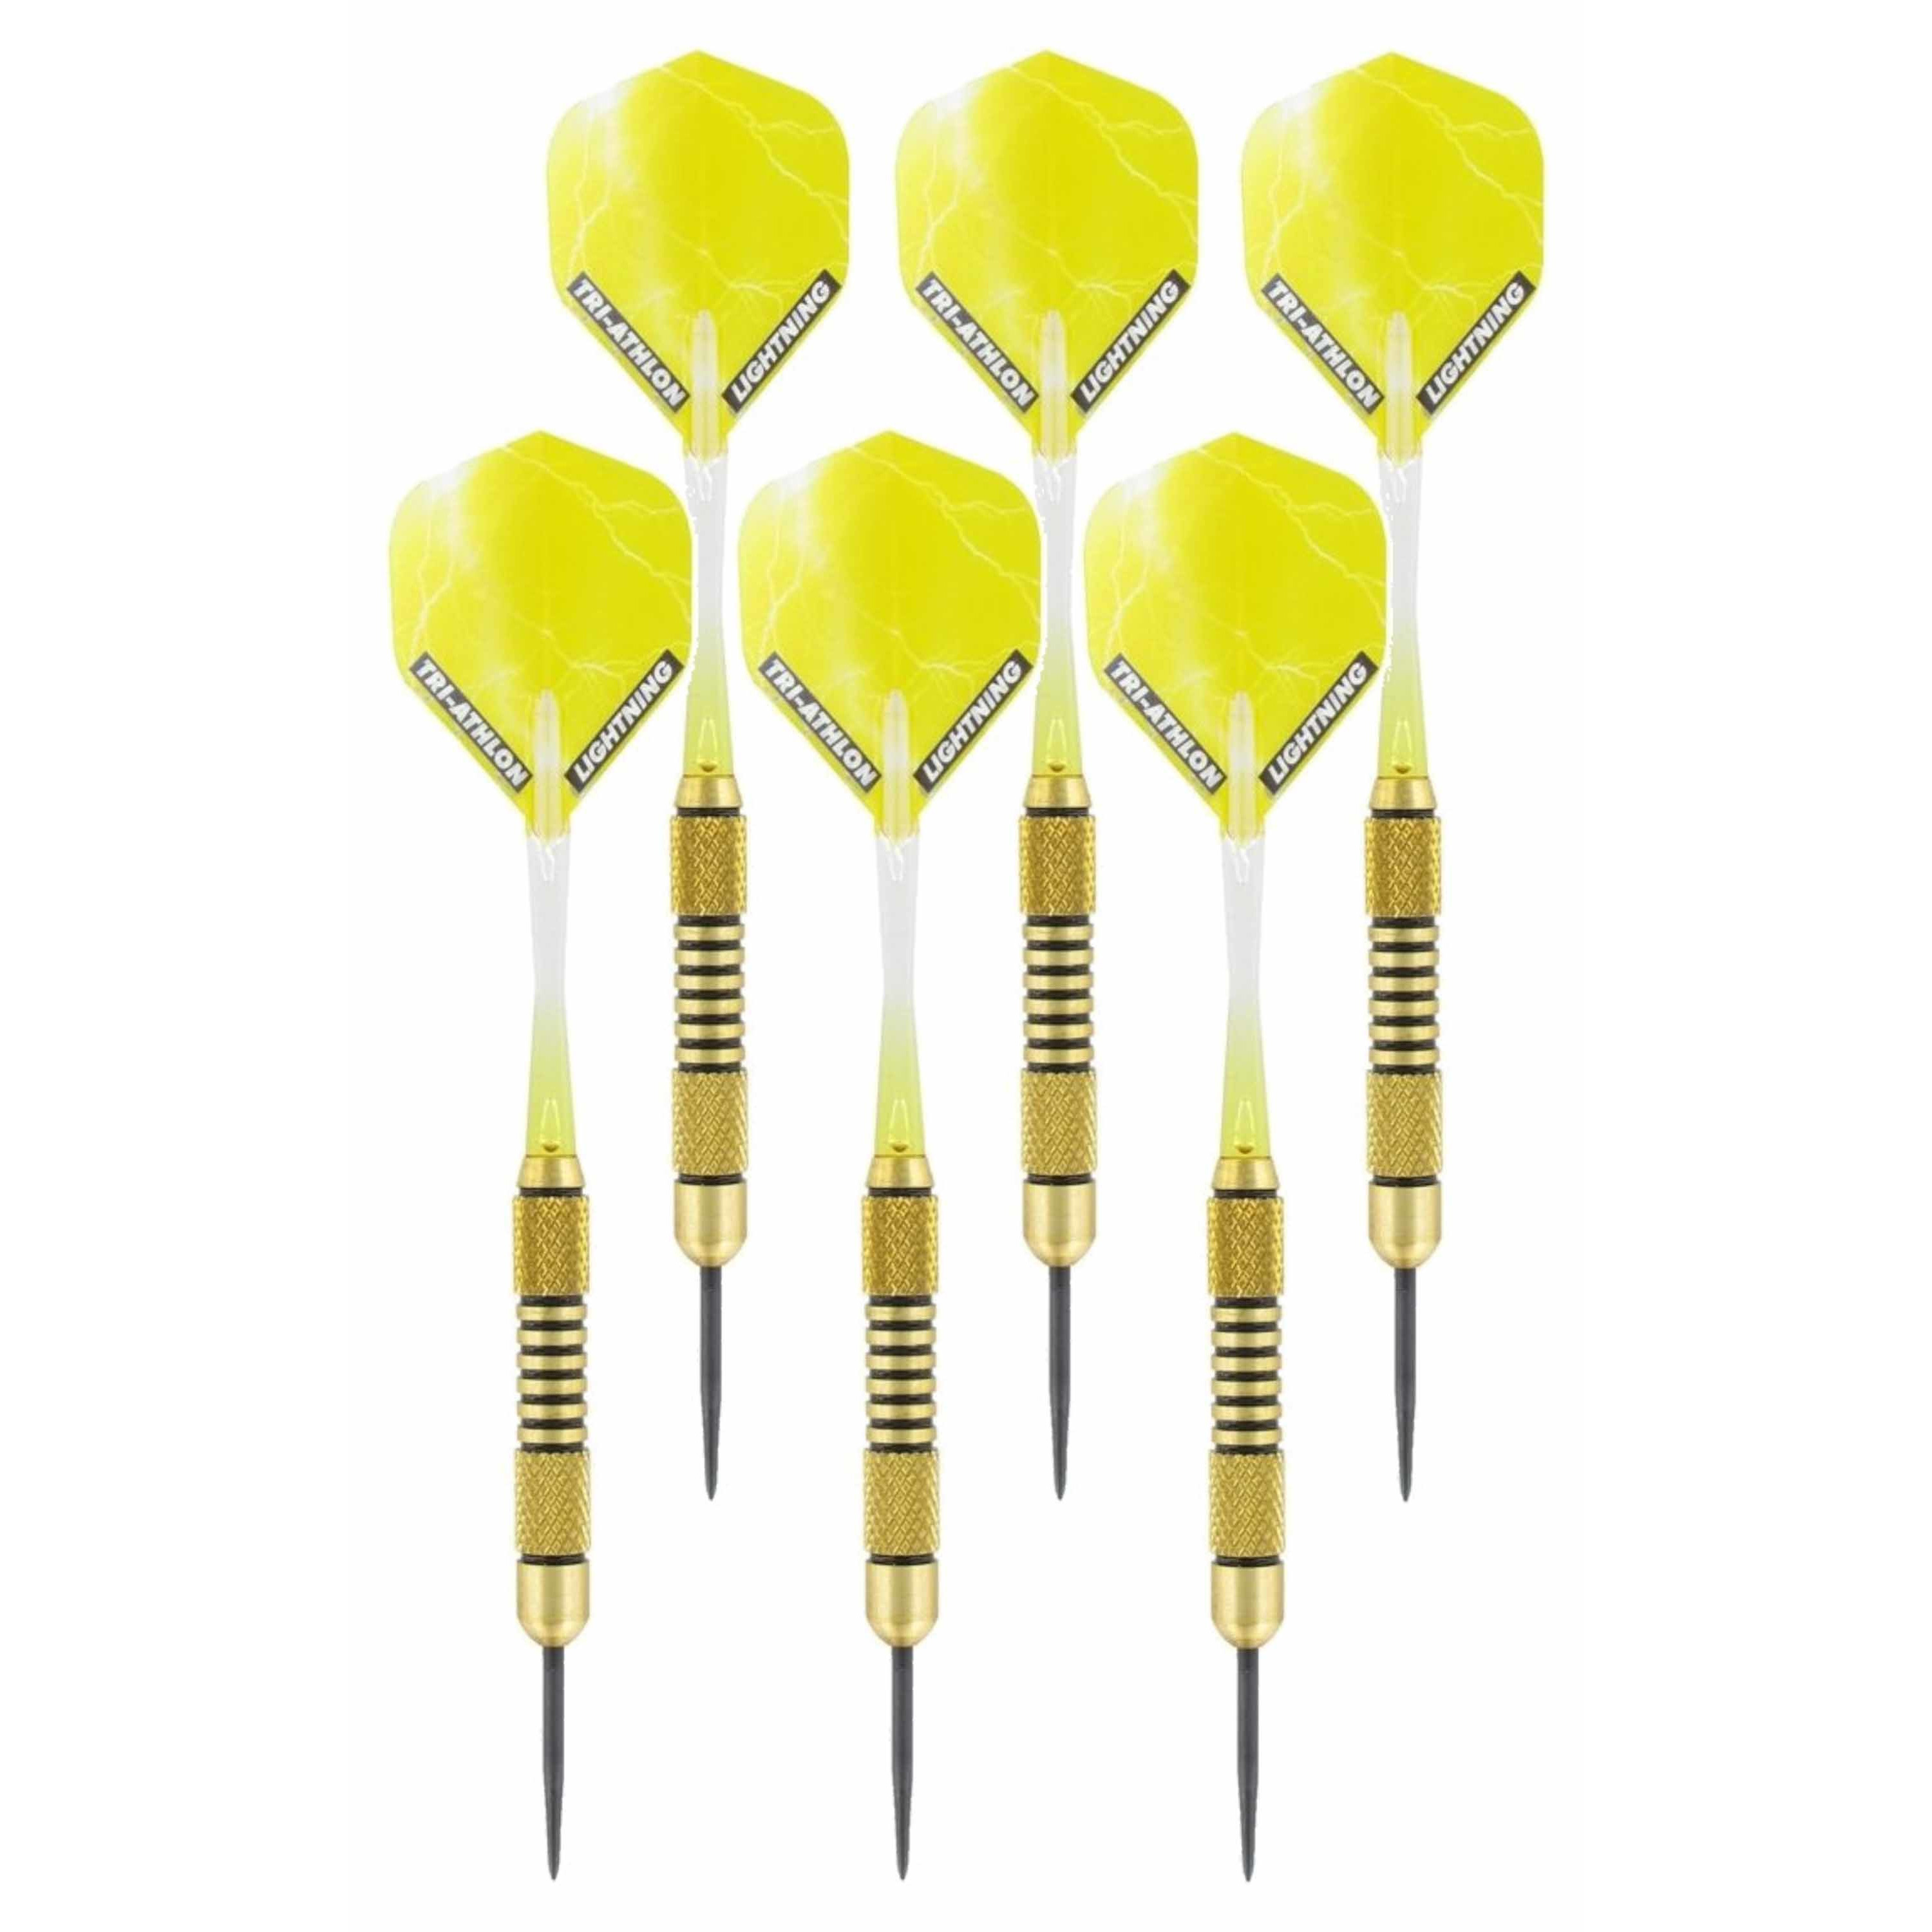 2x Set van 3 dartpijlen Speedy Yellow Brass 19 grams - Darten/darts sport artikelen pijltjes messing